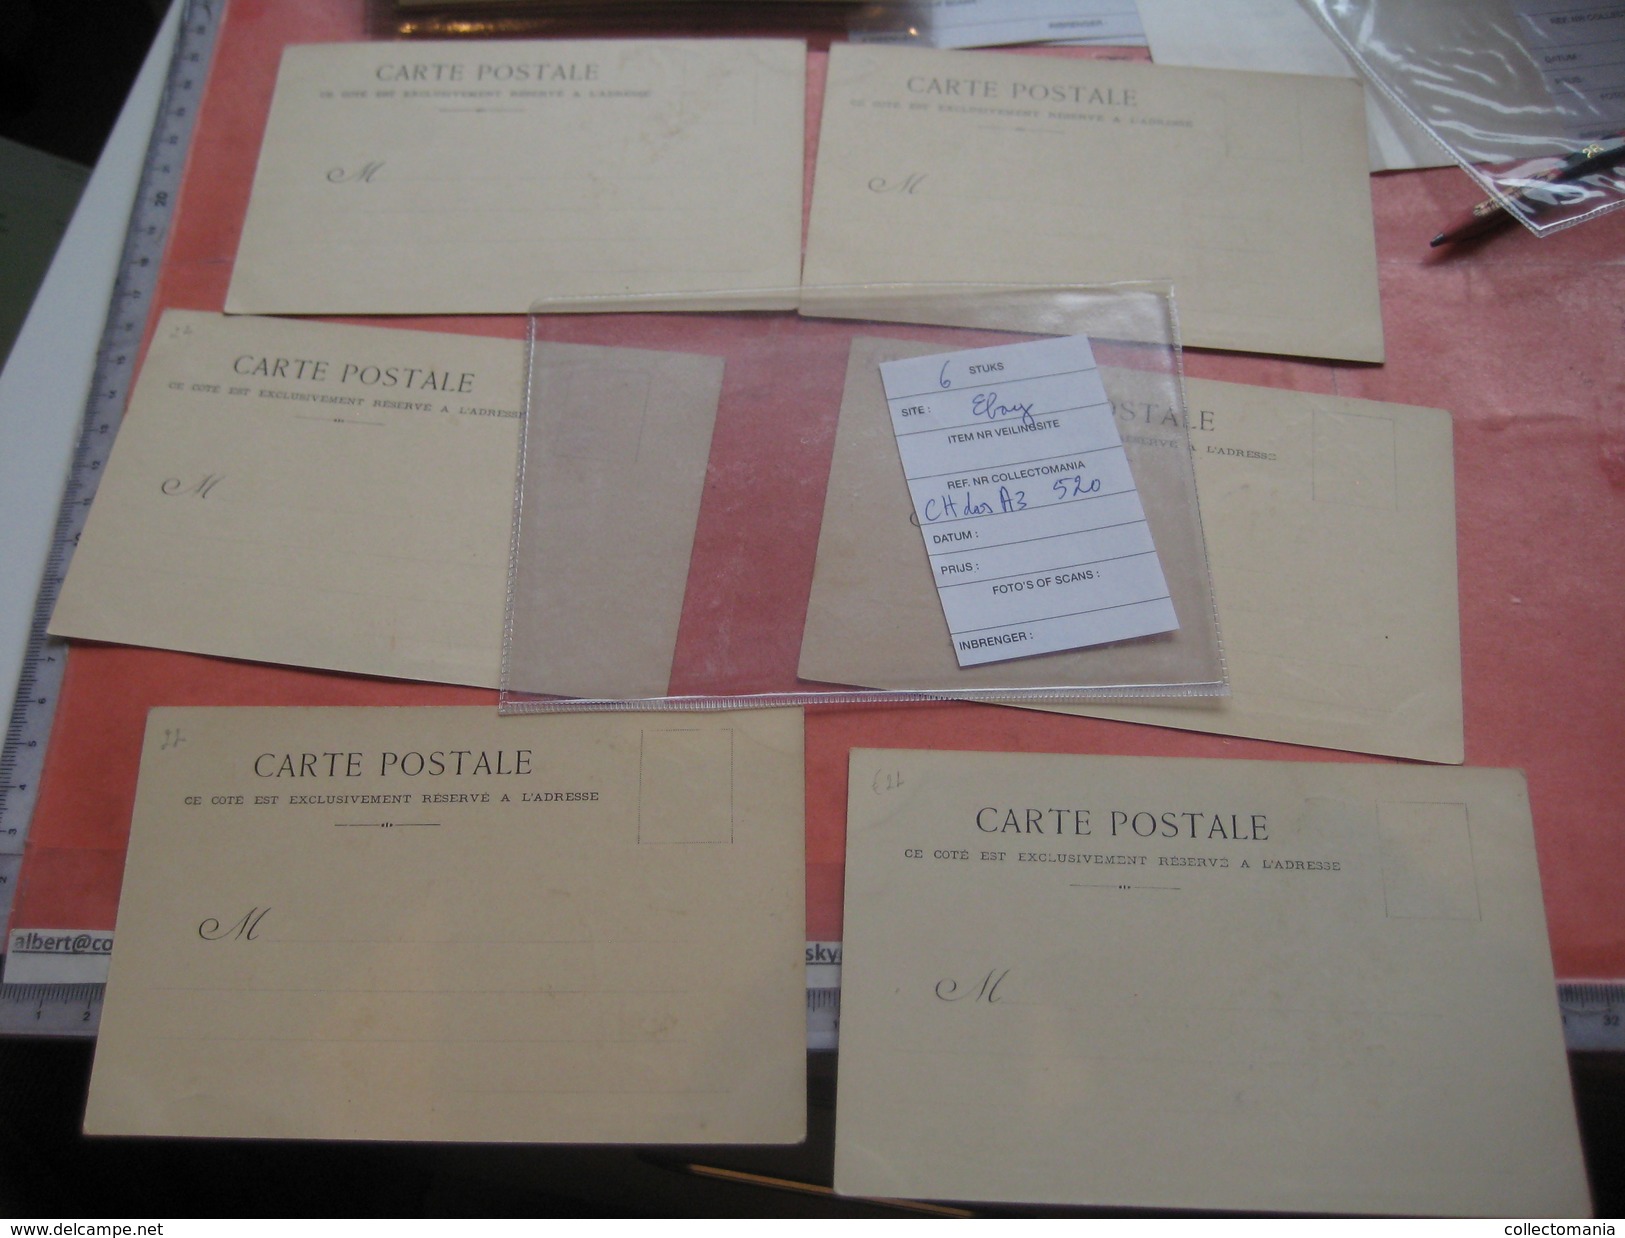 13 Cartes postales chromos litho PUB, avant c1900 gazet krant Zeitung newspaper, editeur WOLF - illustrateur CABANT